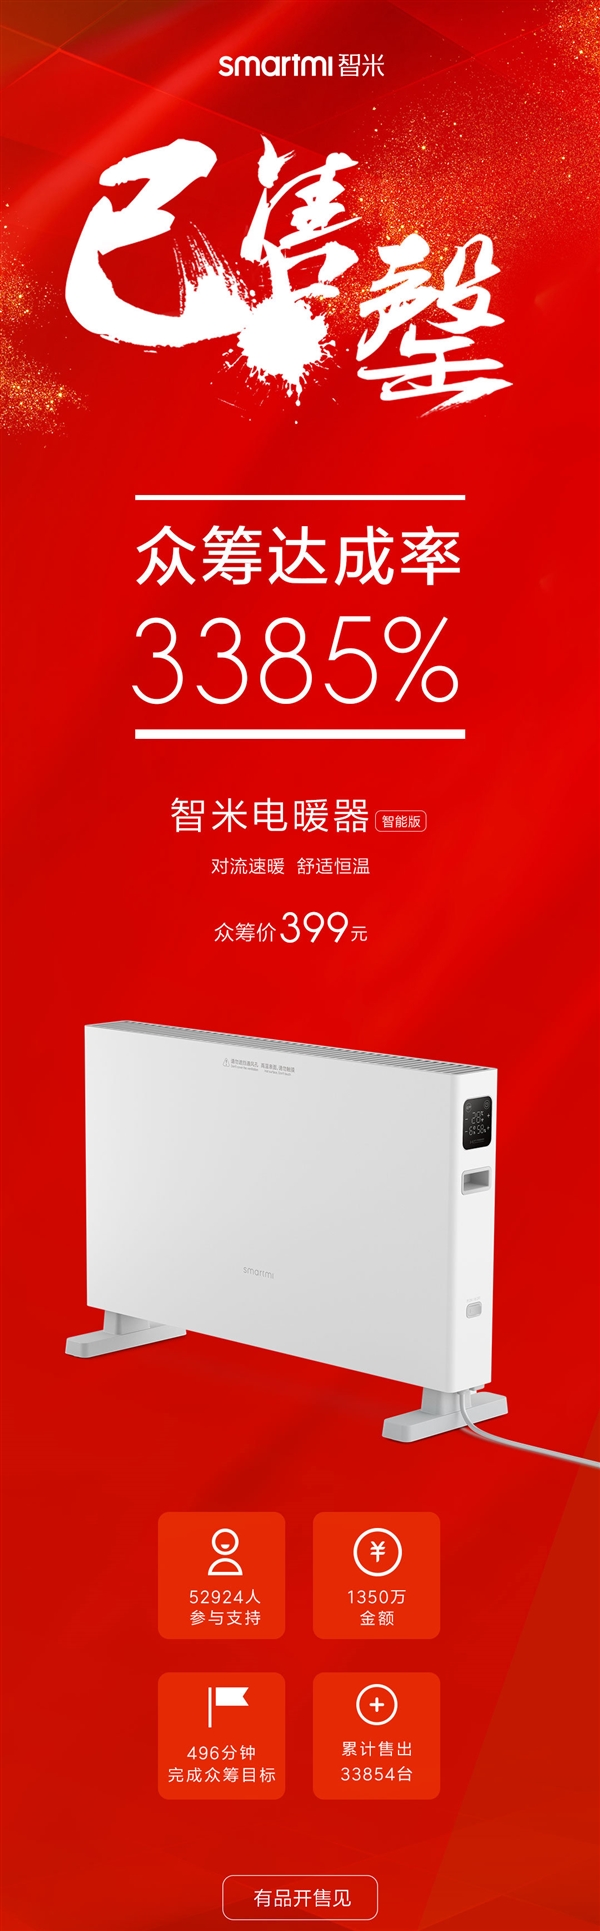 智米电暖器智能版售罄：众筹达成率3385% 399元